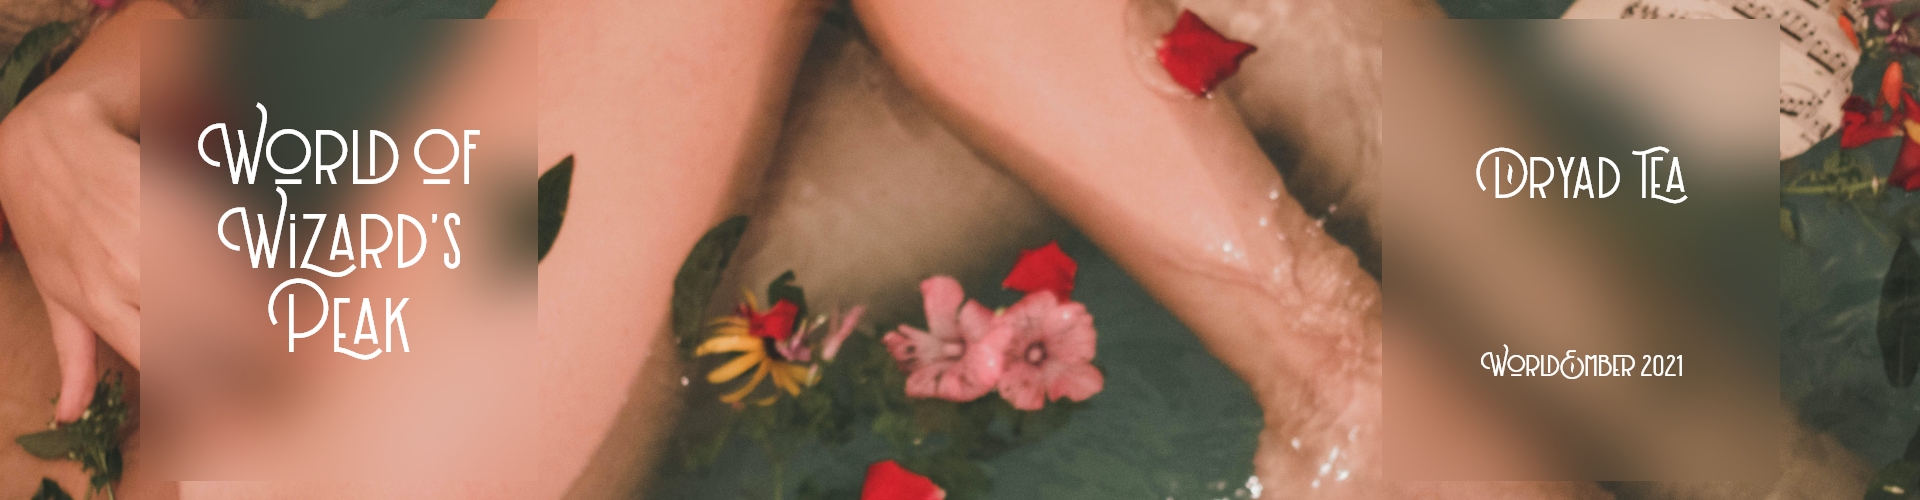 A woman's legs in a flower bath.